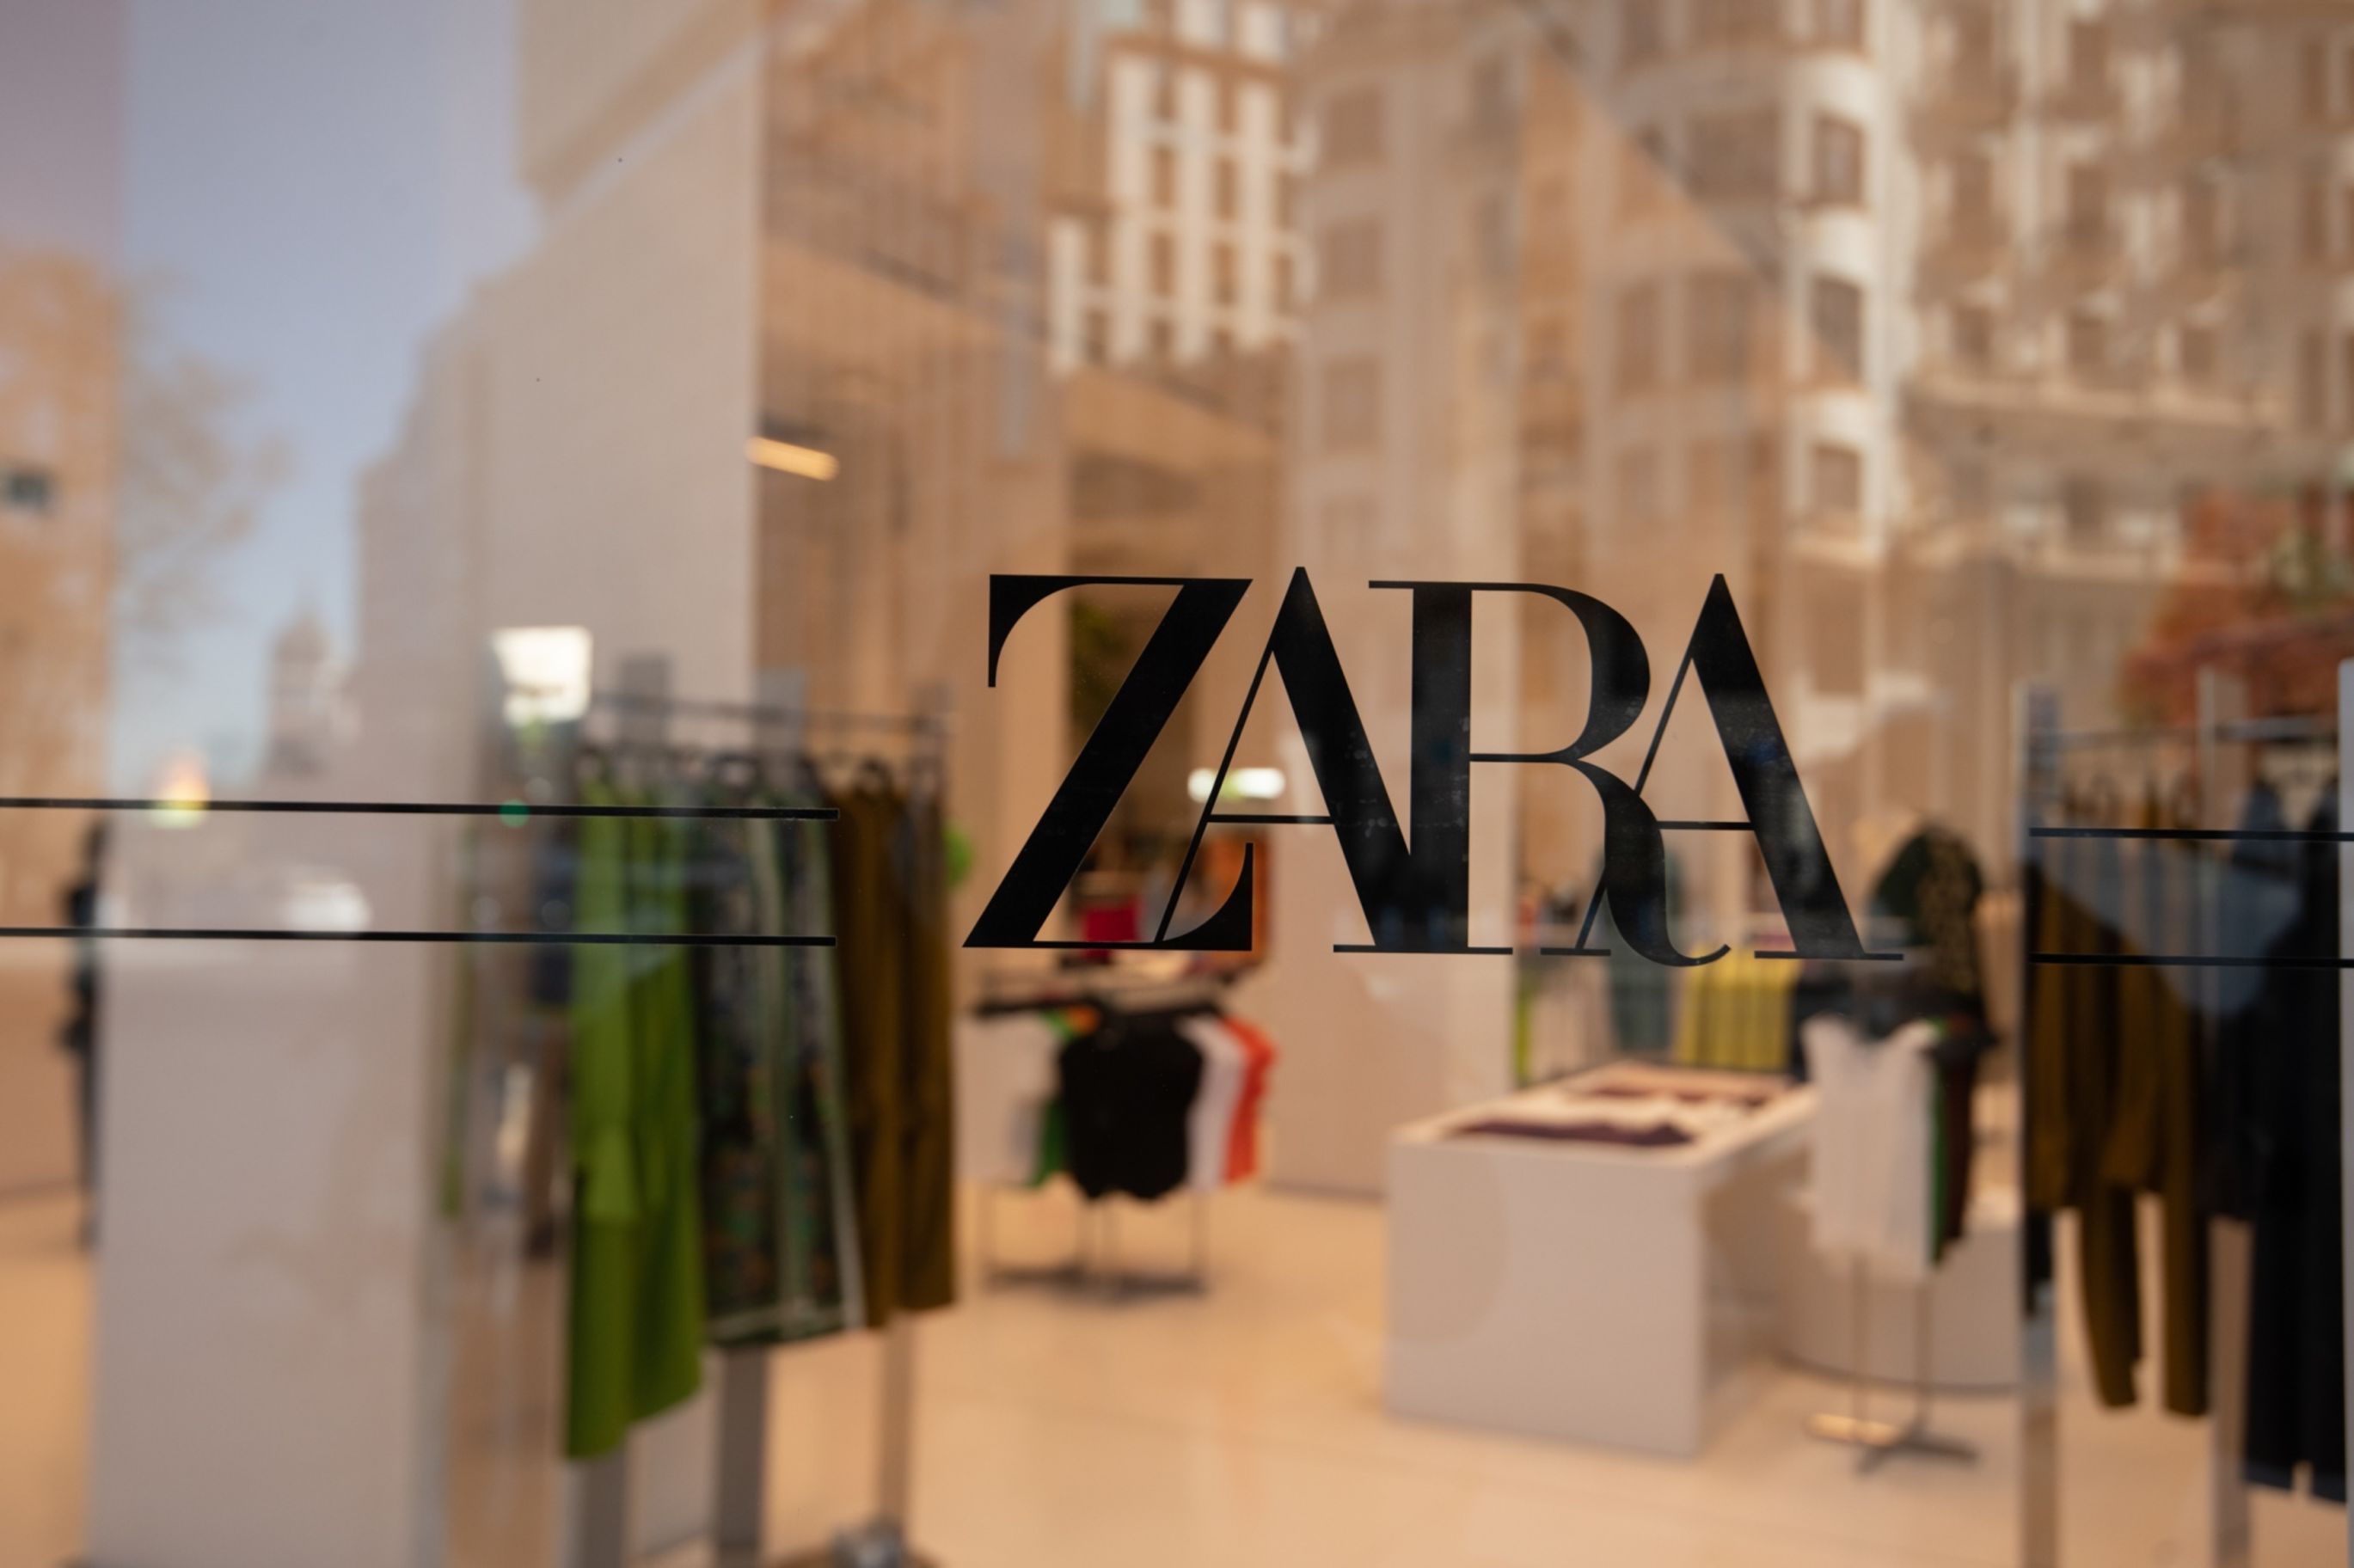 Nova tendência? Zara começa a cobrar por devoluções de compras